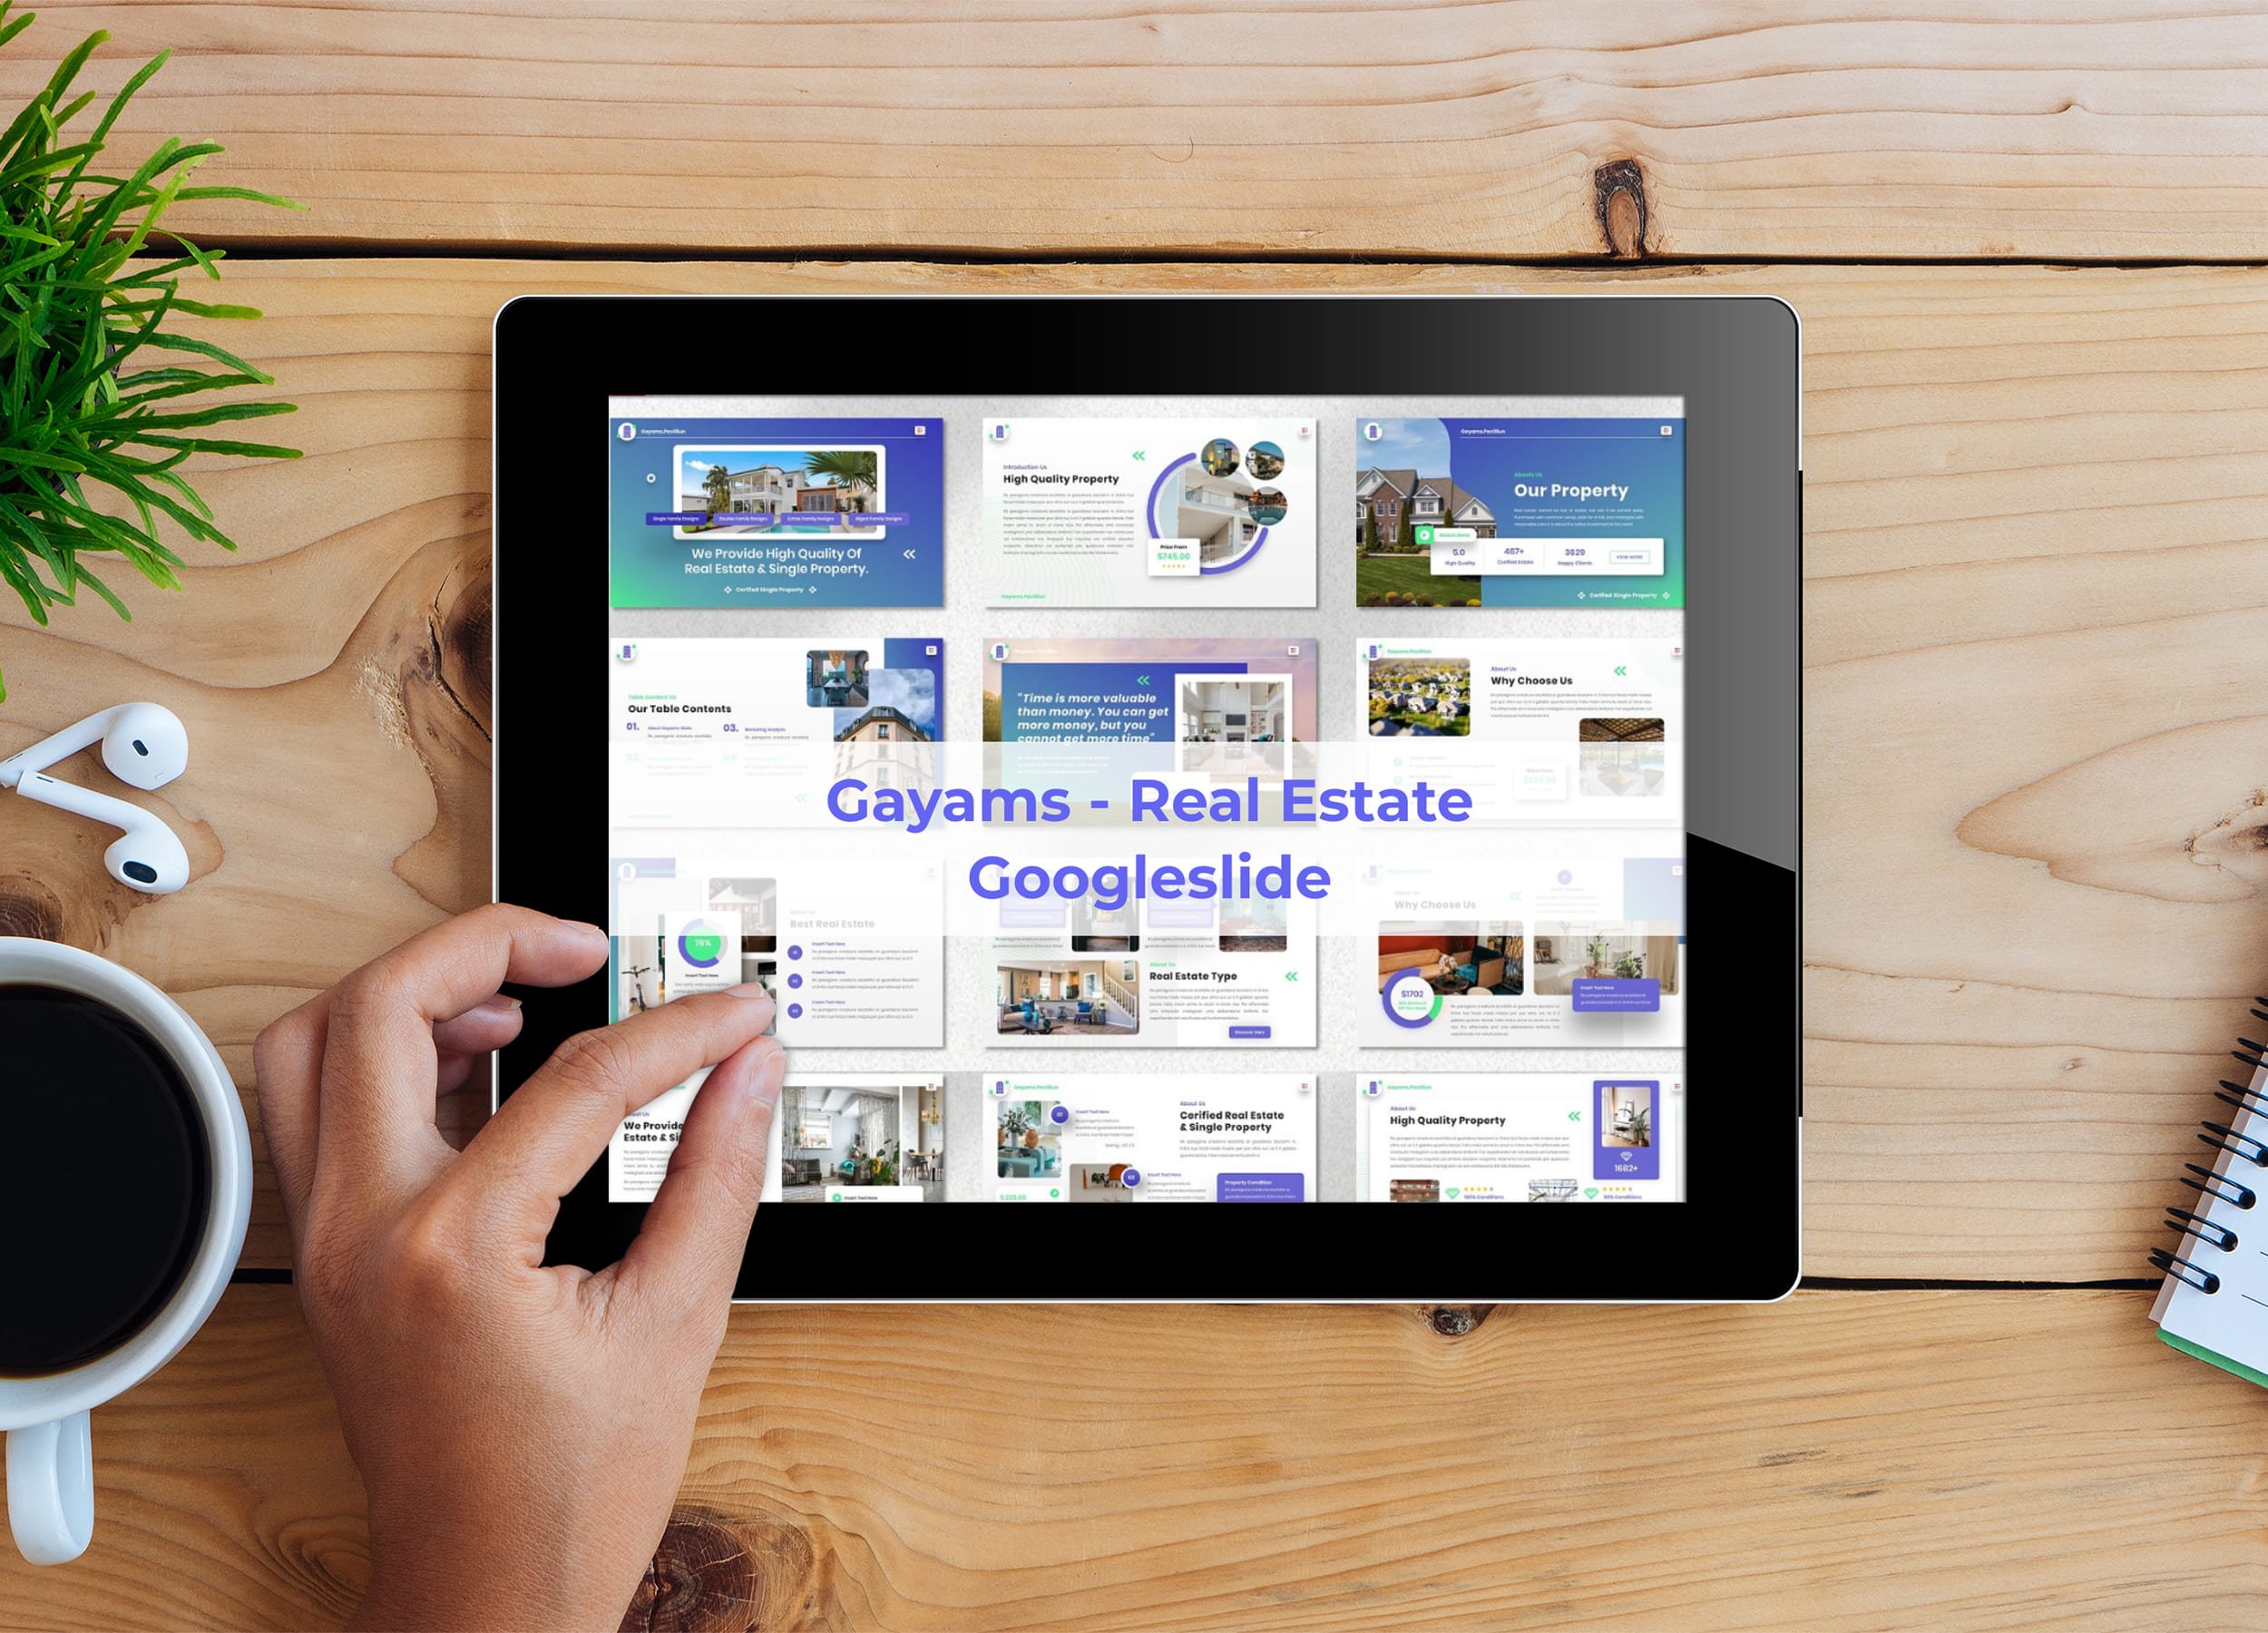 Tablet option of the Gayams - Real Estate Googleslide.